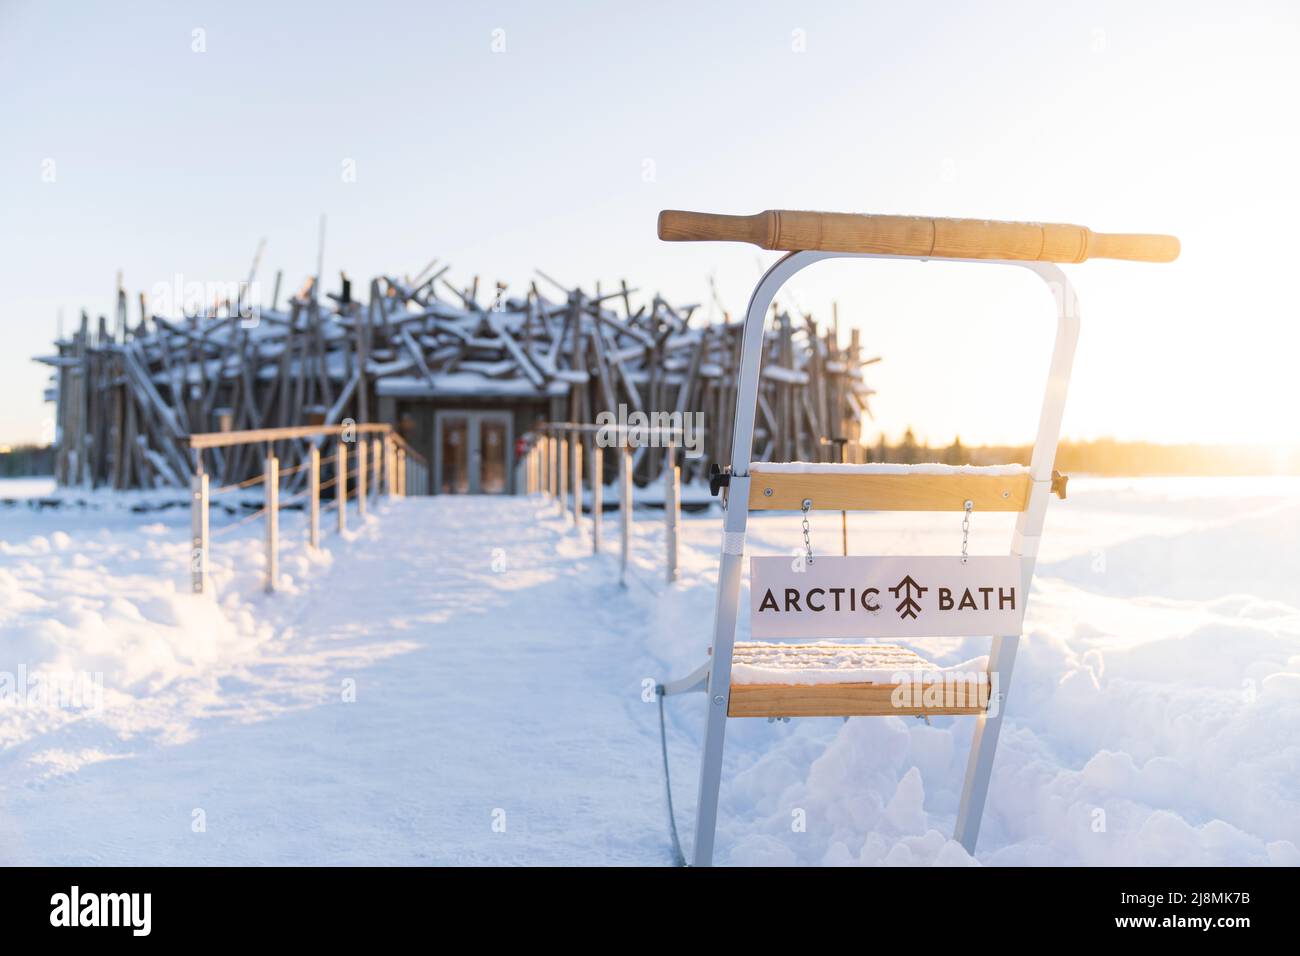 Bâtiment principal circulaire de l'Arctic Bath Hotel relié à la rive par un passage sur la rivière gelée Lule, Harads, Laponie, Suède Banque D'Images